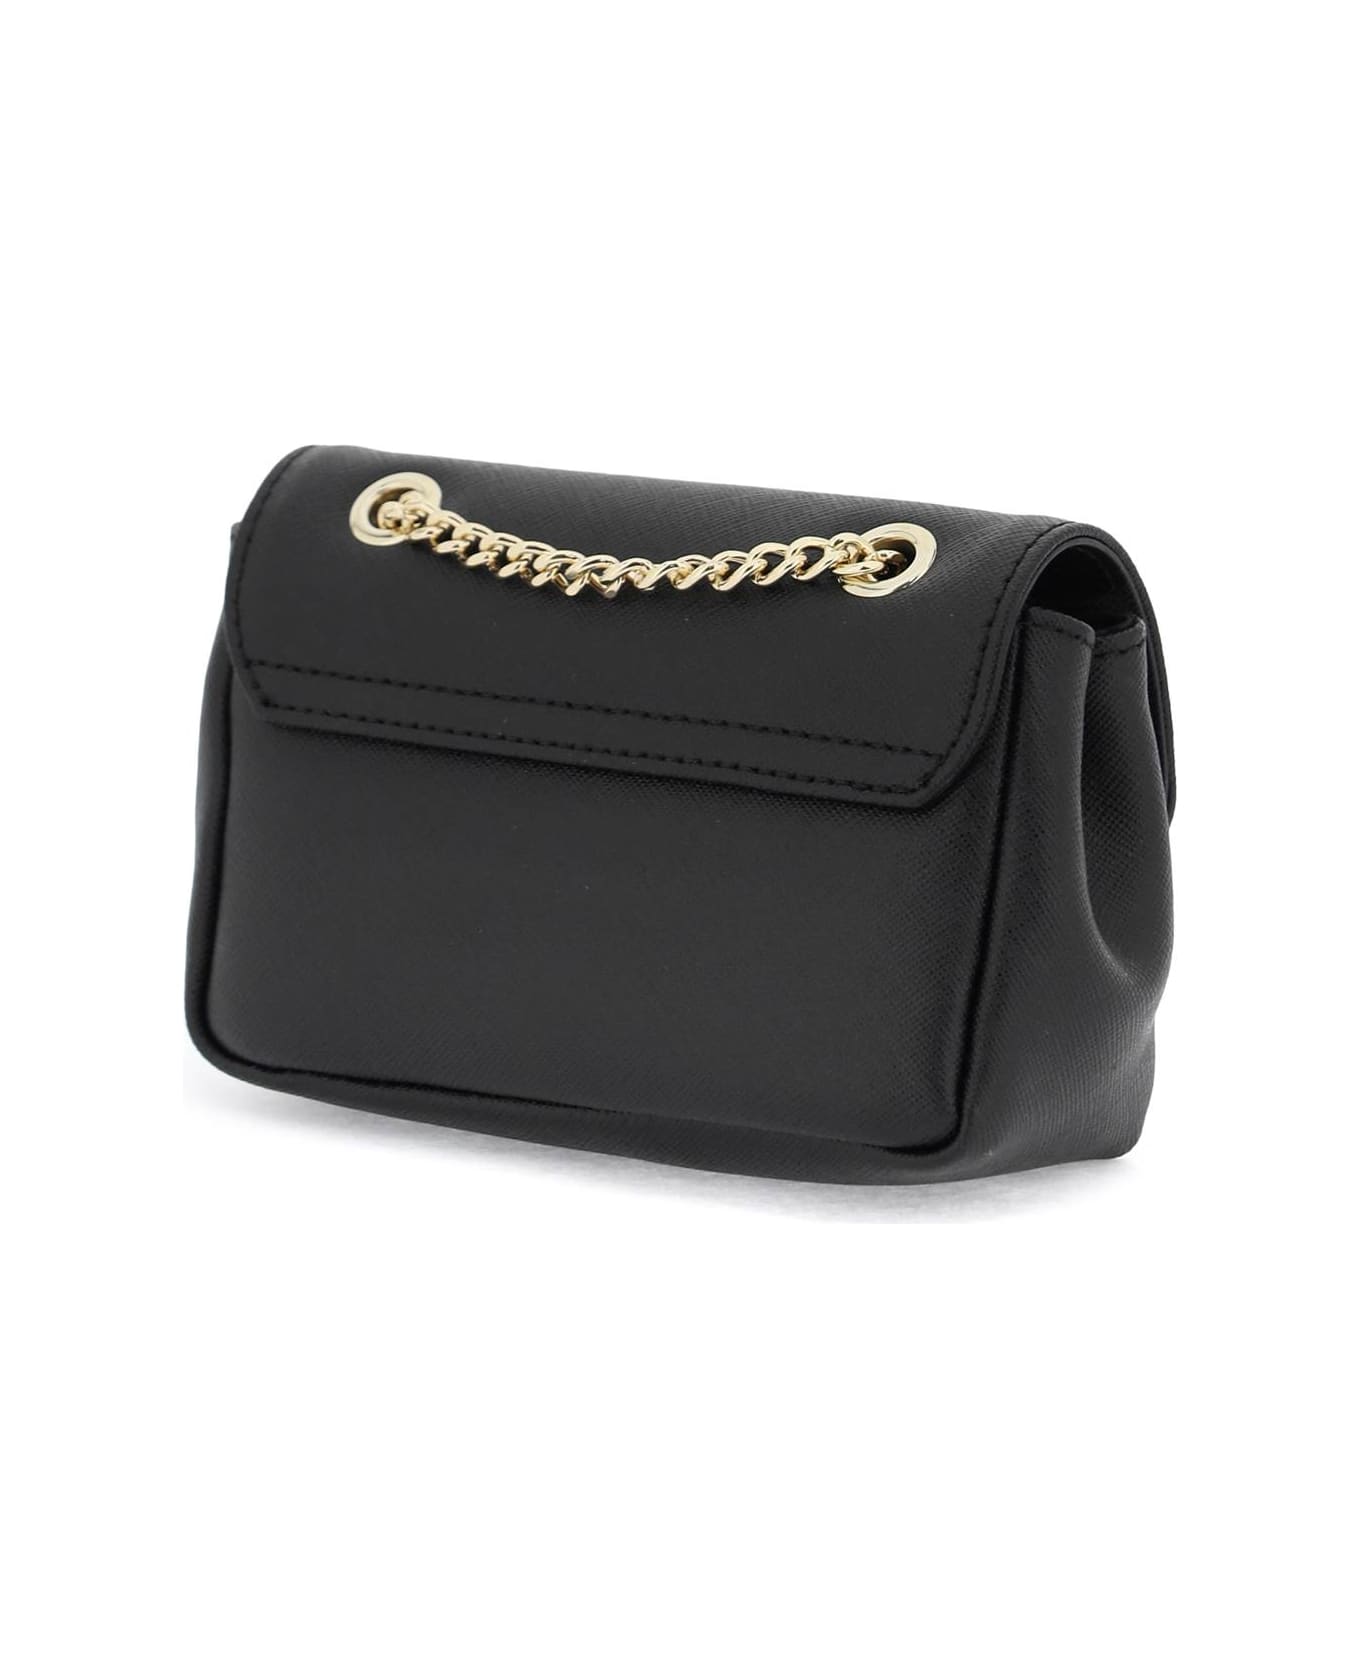 Vivienne Westwood Leather Mini Bag - BLACK (Black)